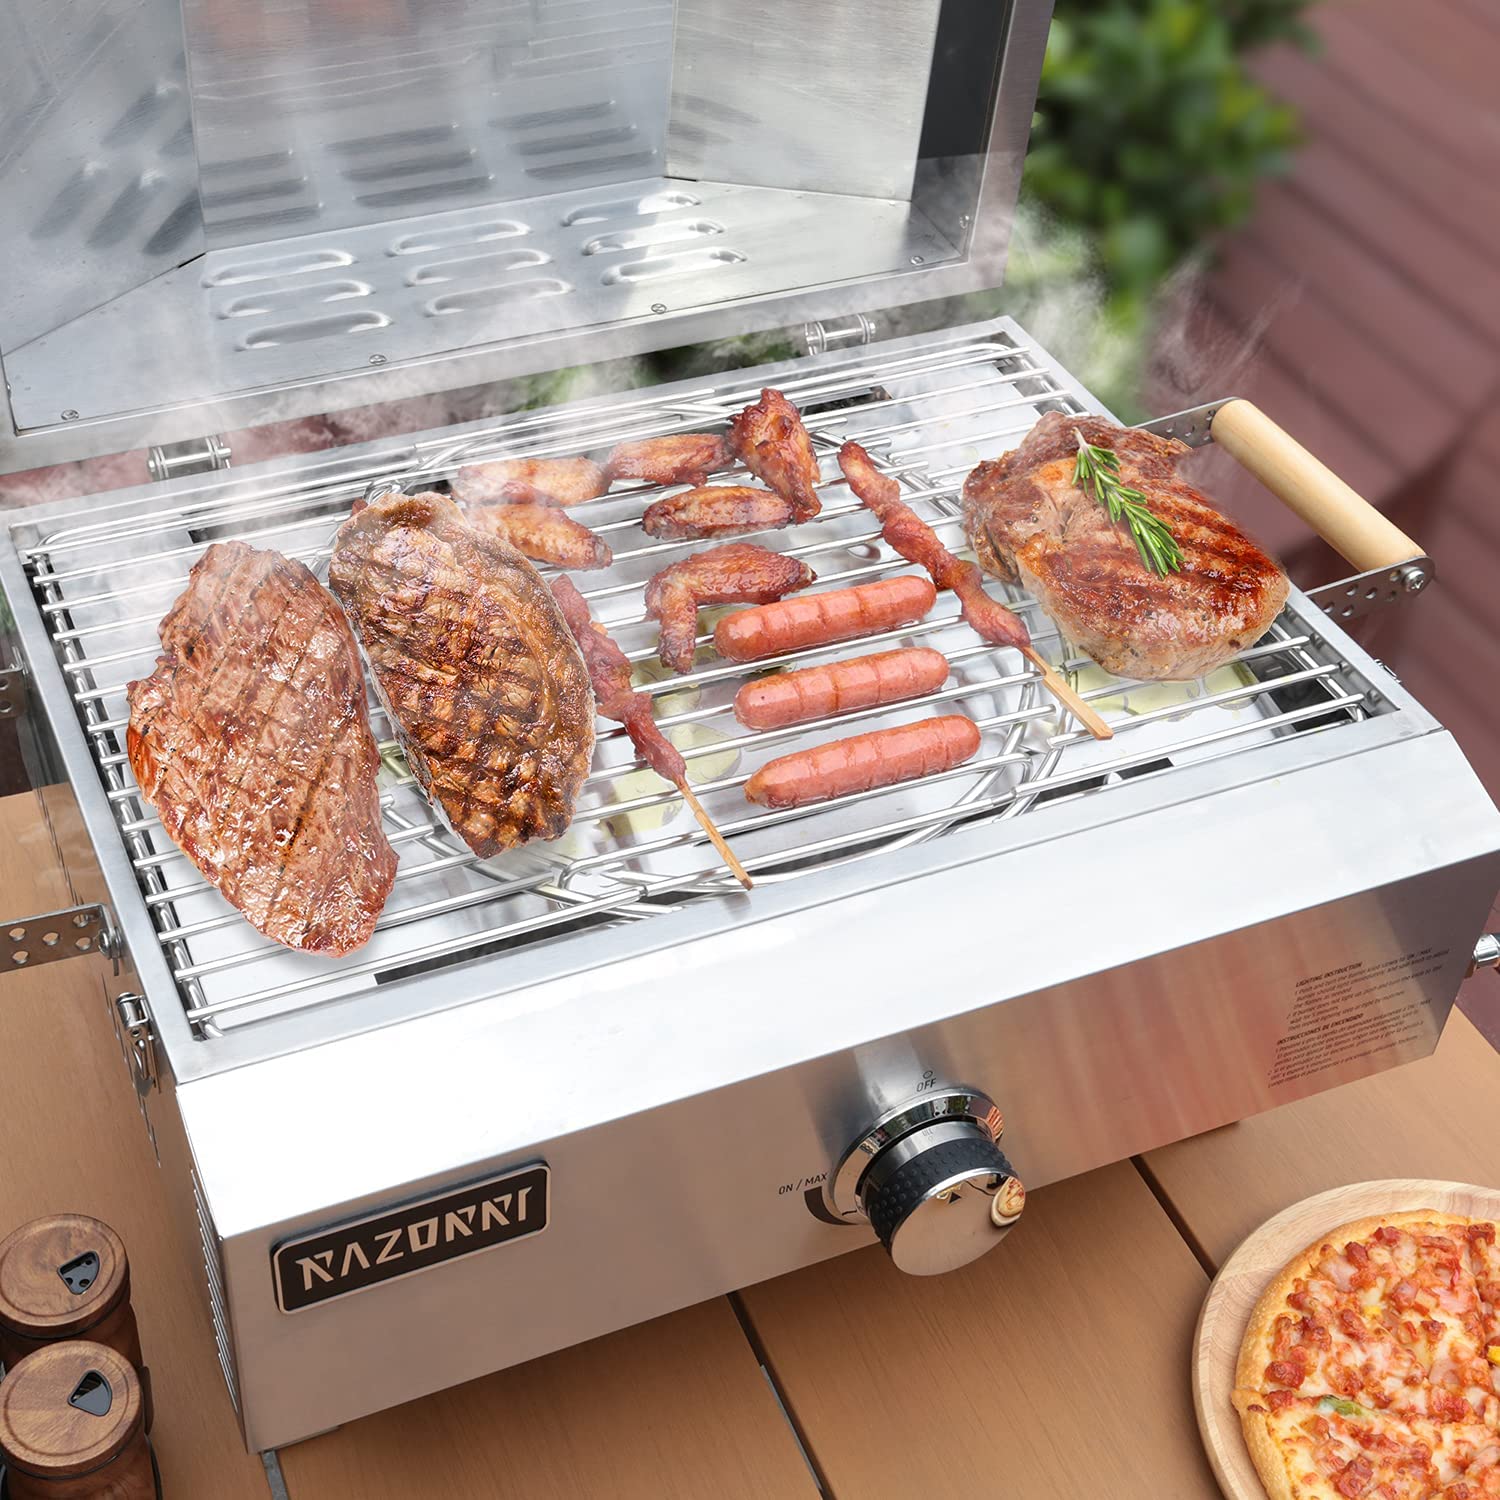 Razorri Comodo Gas Pizza Oven - 2-in-1 Portable Griller